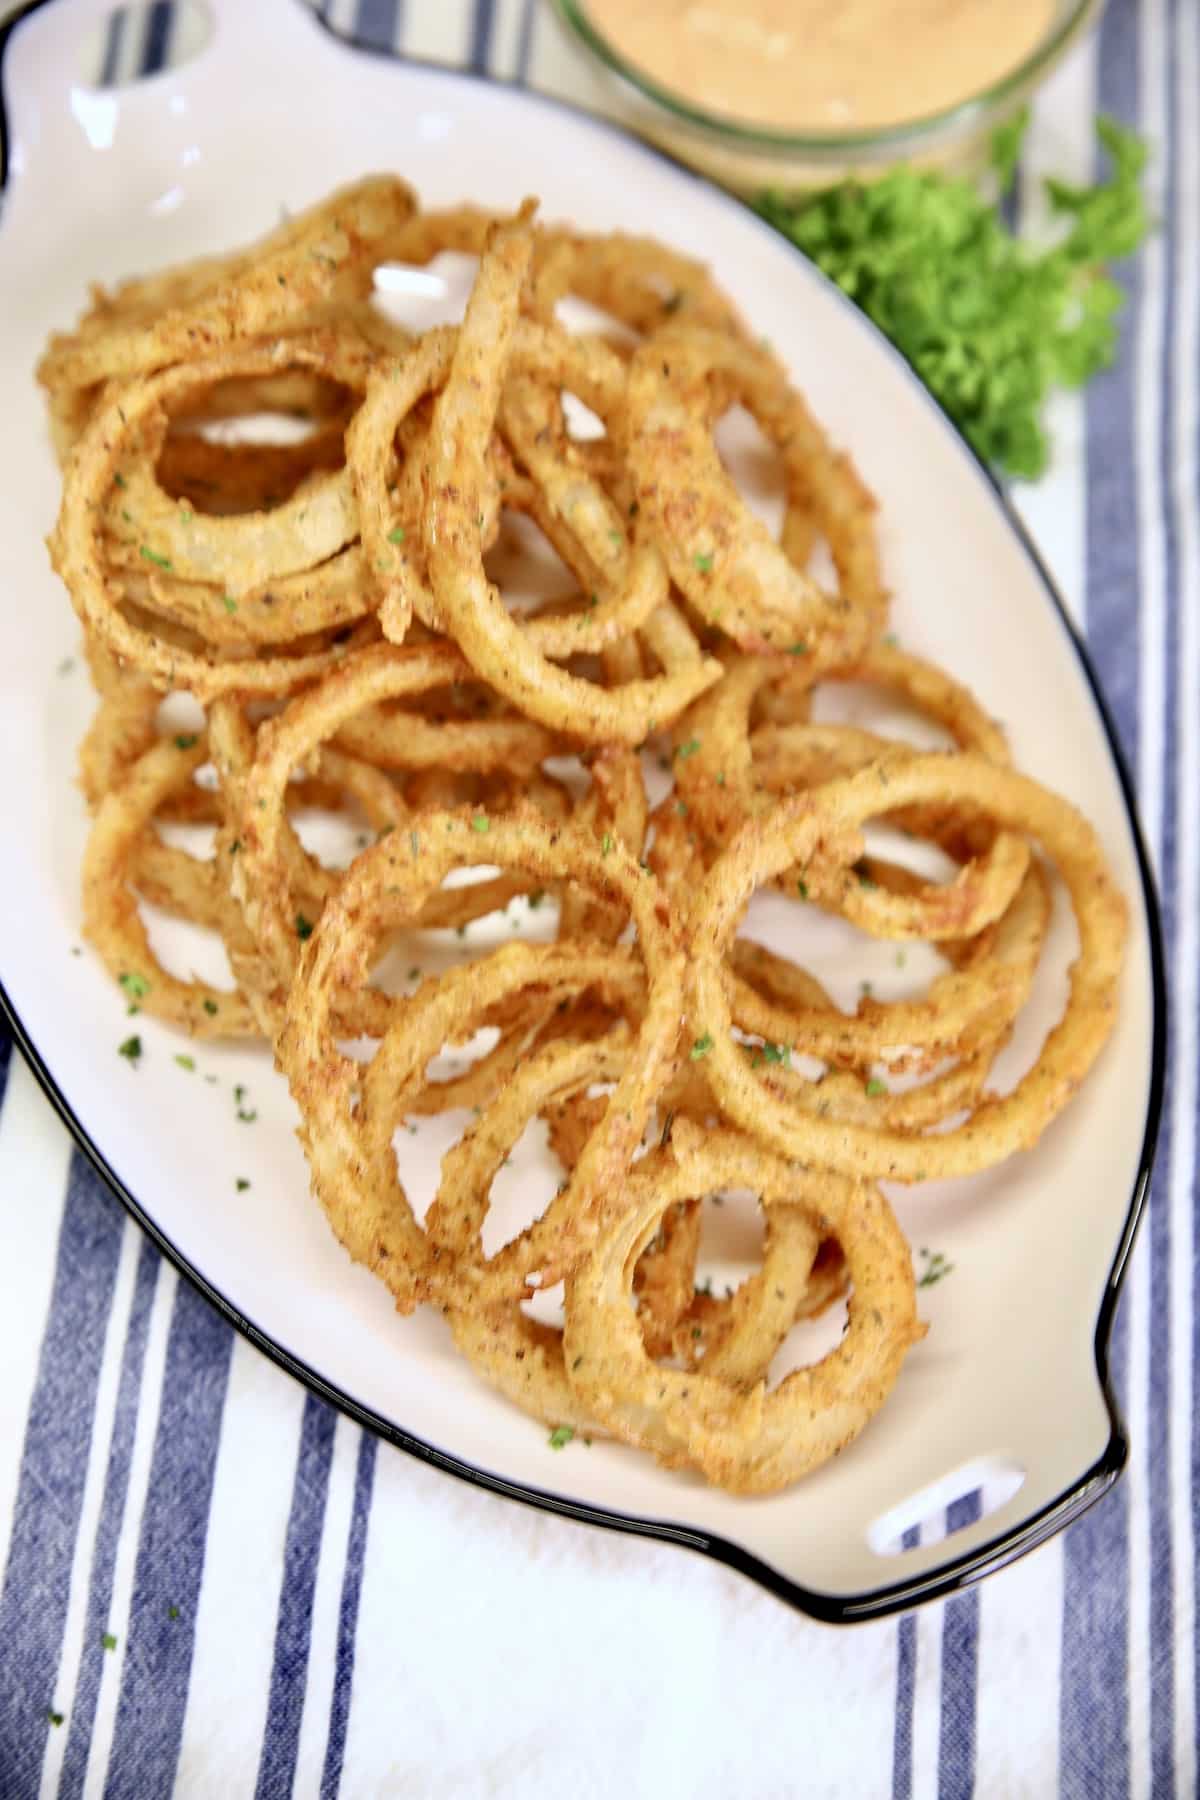 Platter of onion rings.